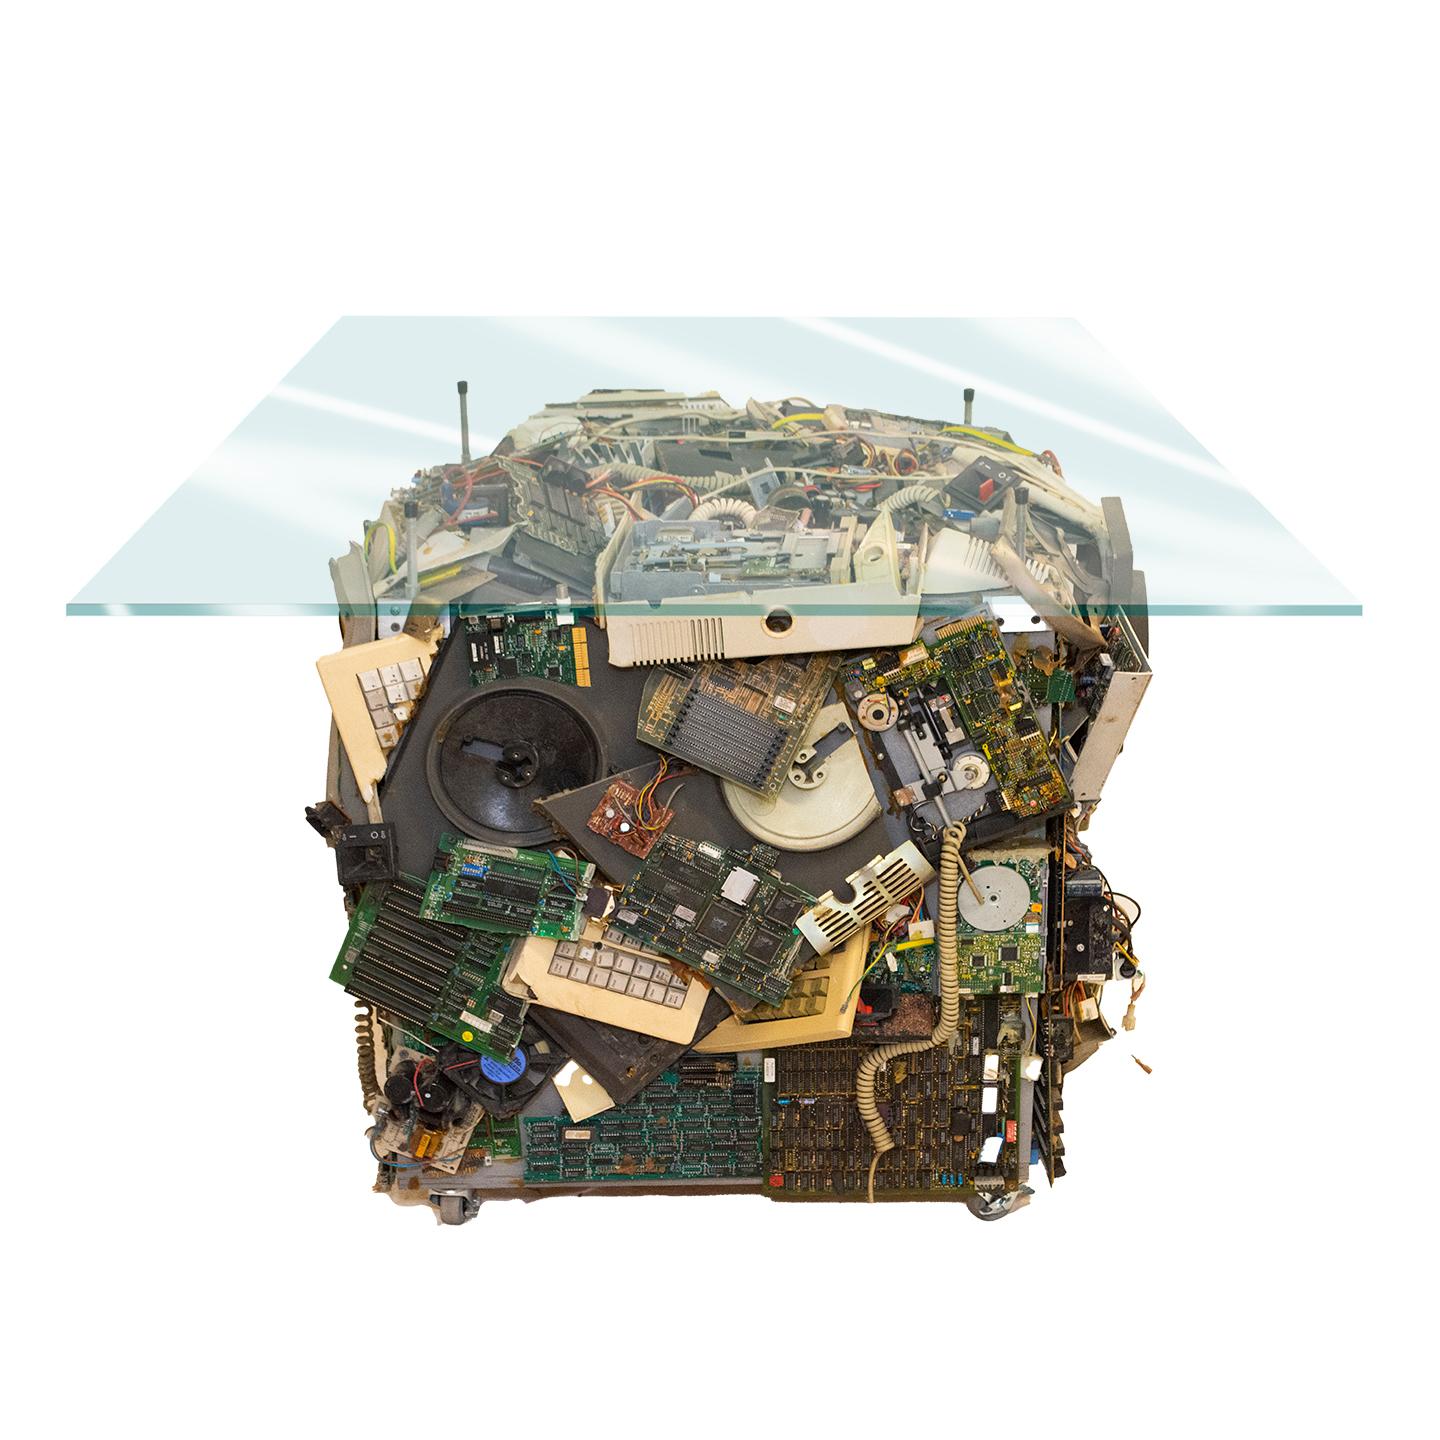 Table d'art fonctionnelle par Mark Yurkiw, artiste américain contemporain Yurkiw a été chargé de créer ce collage d'ordinateurs en 3D pour IBM. Fabriqué à partir de pièces d'ordinateur usagées. Le plateau en verre mesure (P) 76,2 x (L) 152,4 x (H)